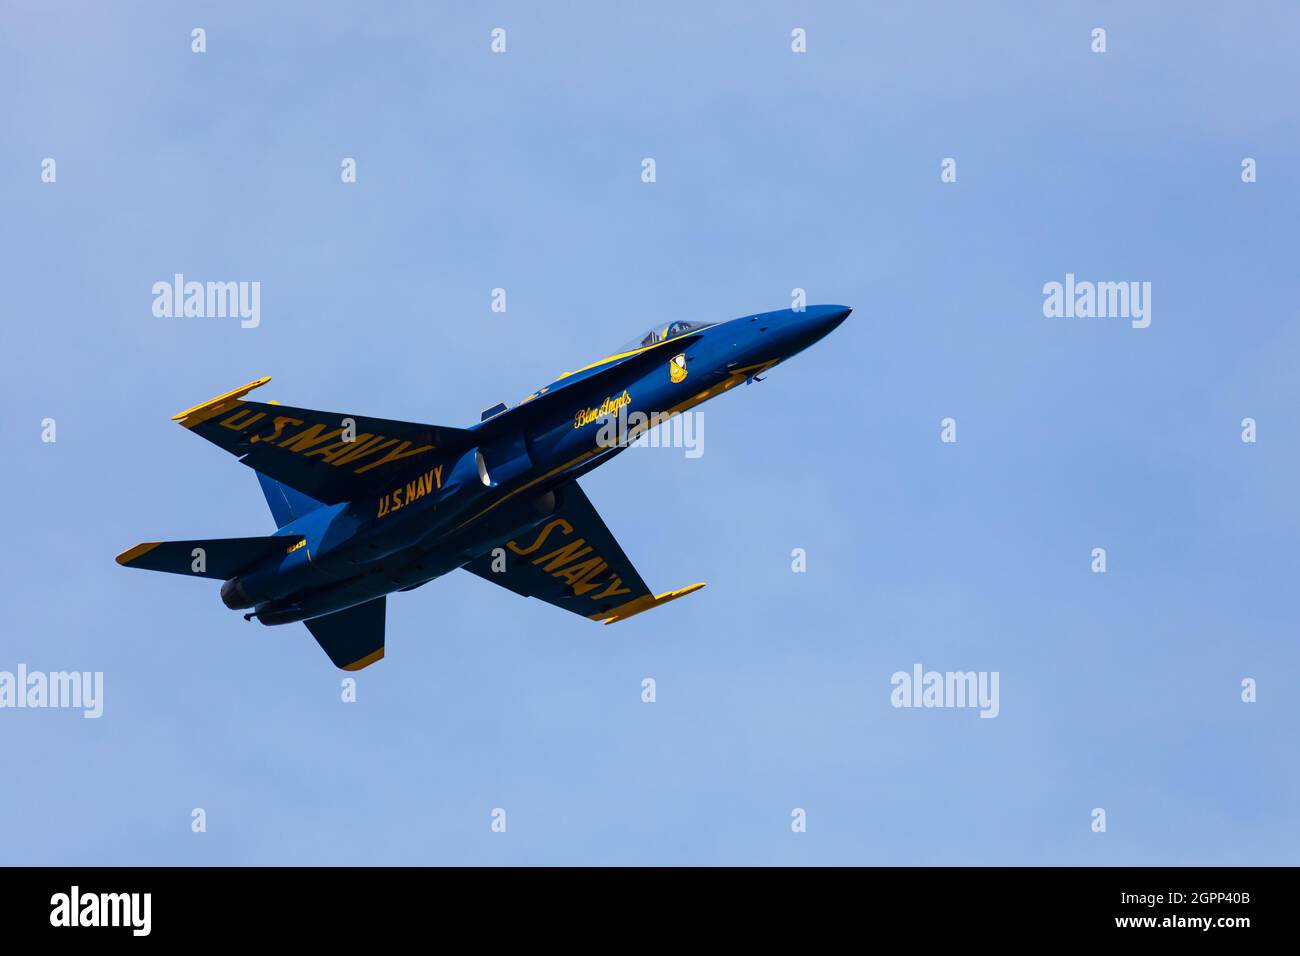 McDonnell Douglas F/A-18 de l'escadron de démonstration de vol de la marine des États-Unis, les Blue Angels, se déroule au-dessus de San Francisco pendant la semaine de la marine 2019. Banque D'Images